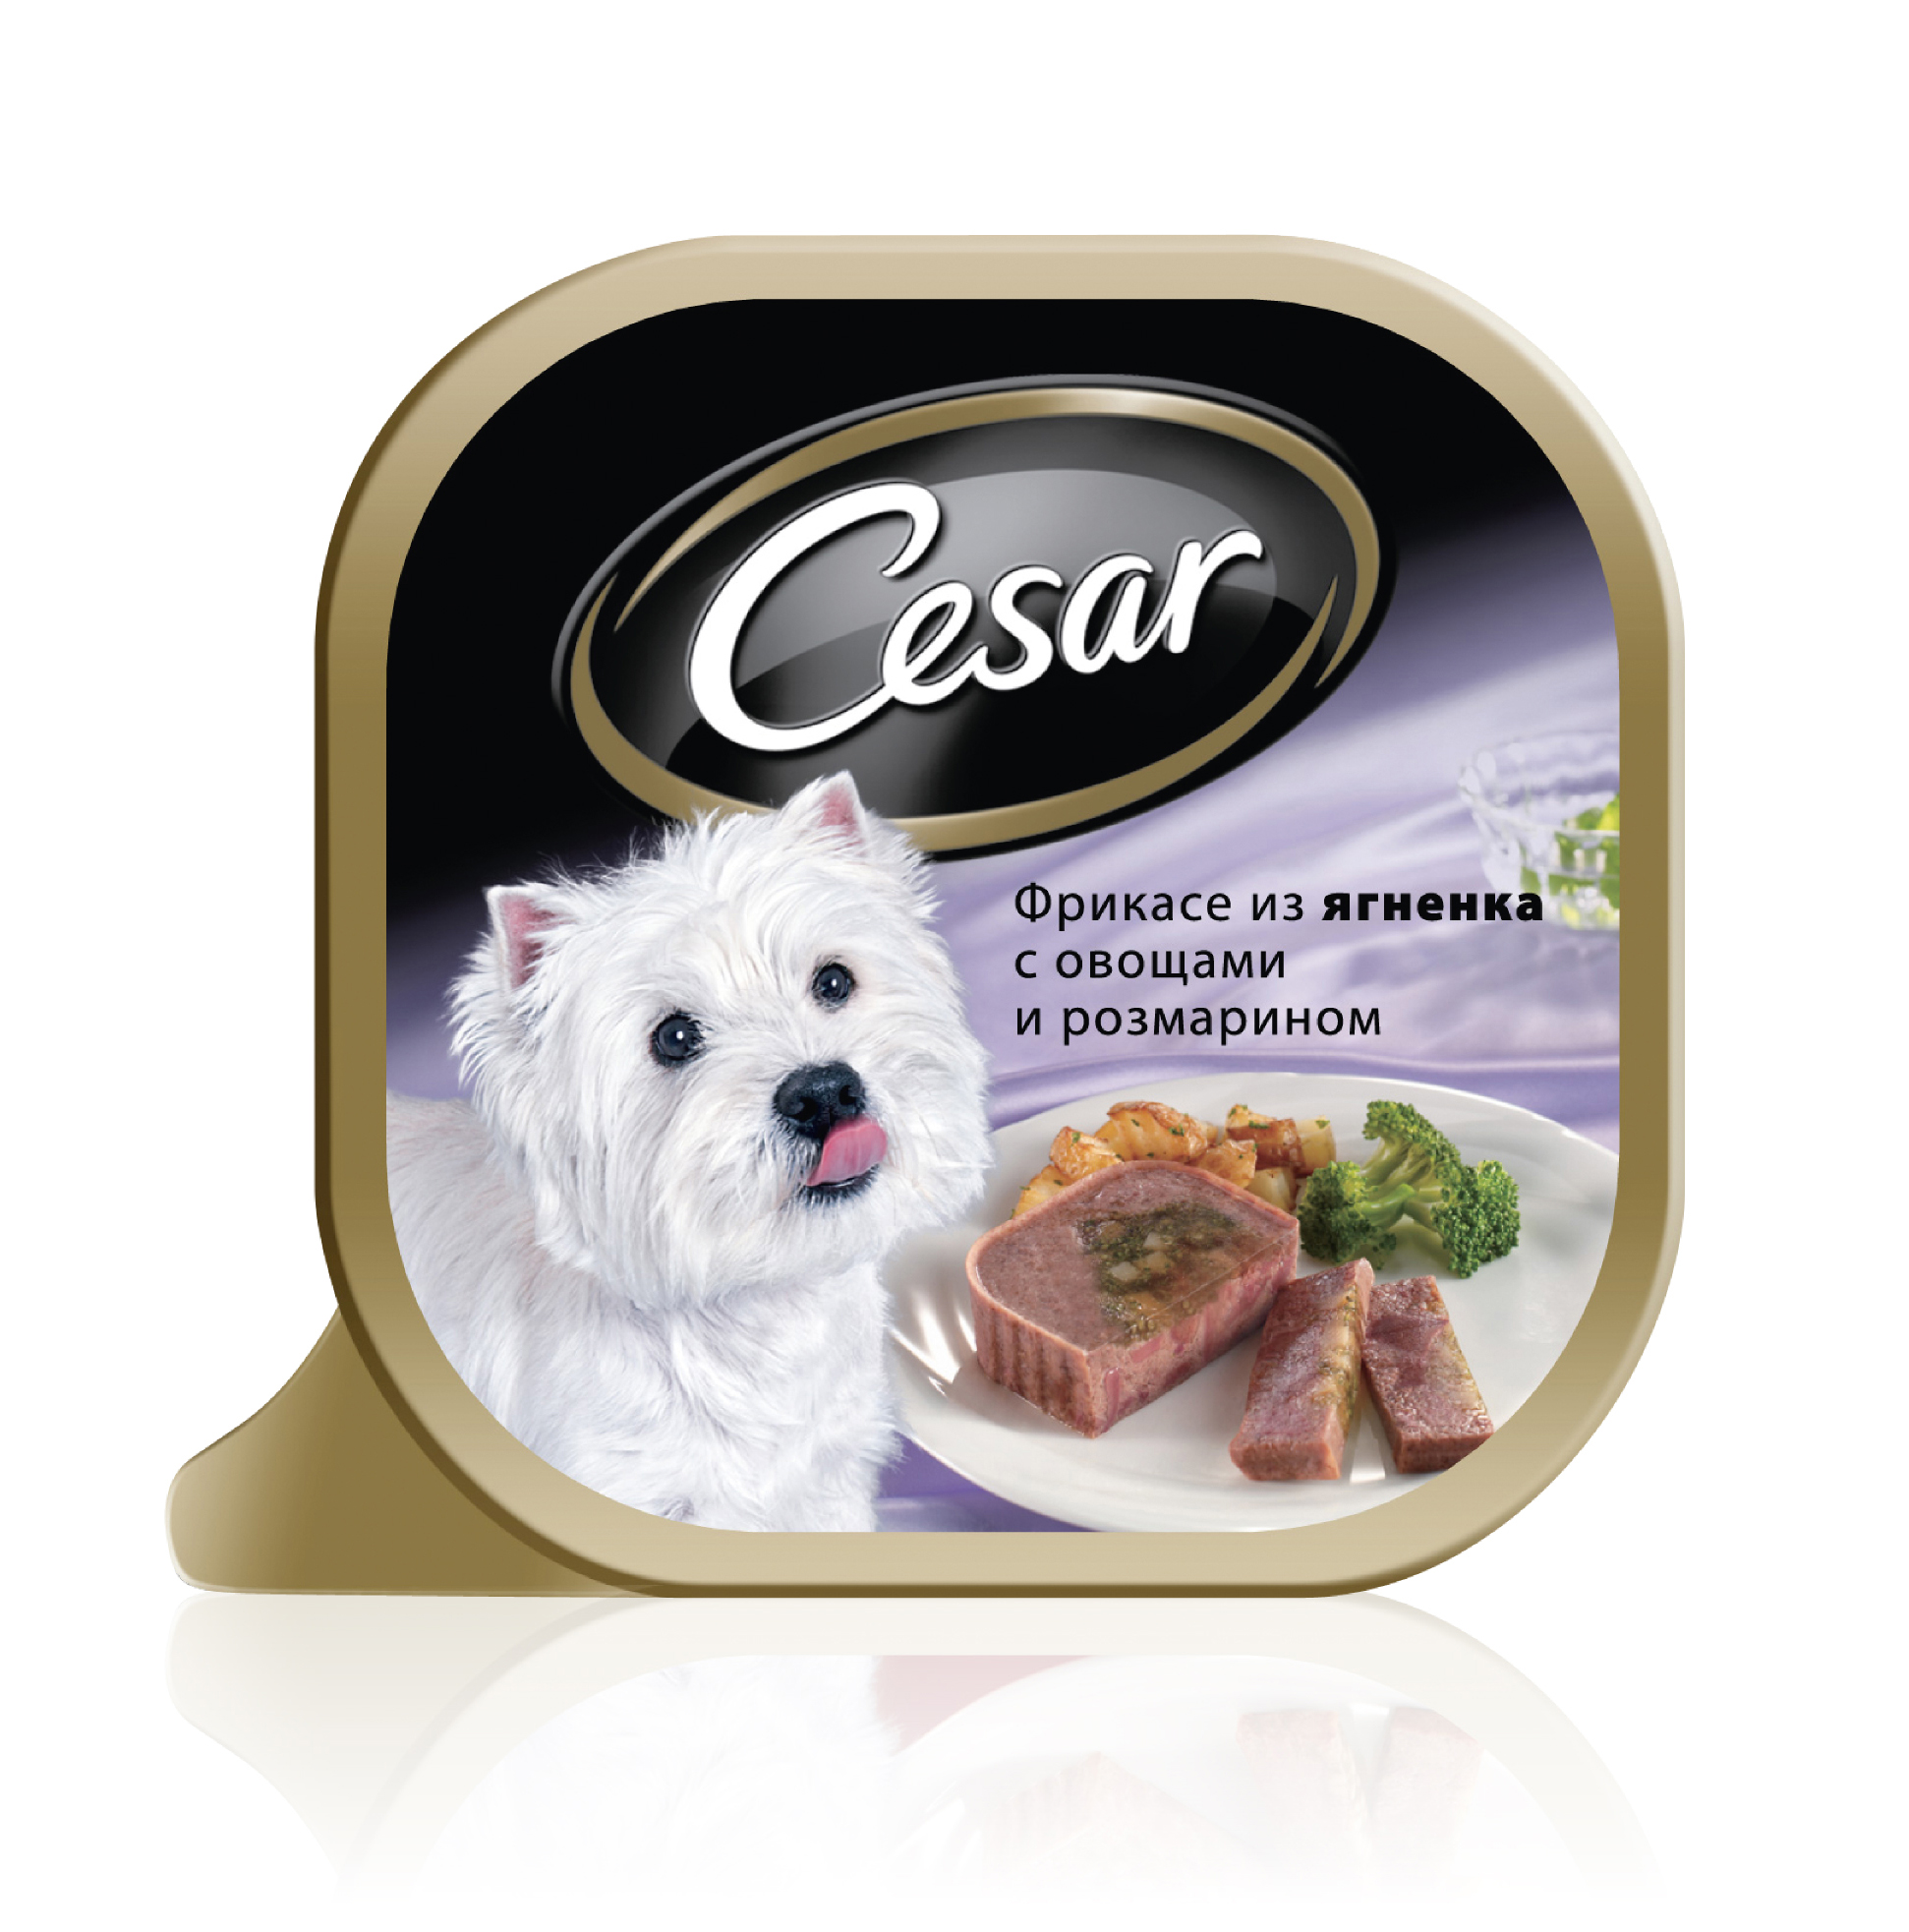 Корм для собак бетховен. Влажный корм для собак Cesar из говядины с овощами 100г. Cesar консервы для собак. Влажный корм для собак Cesar.